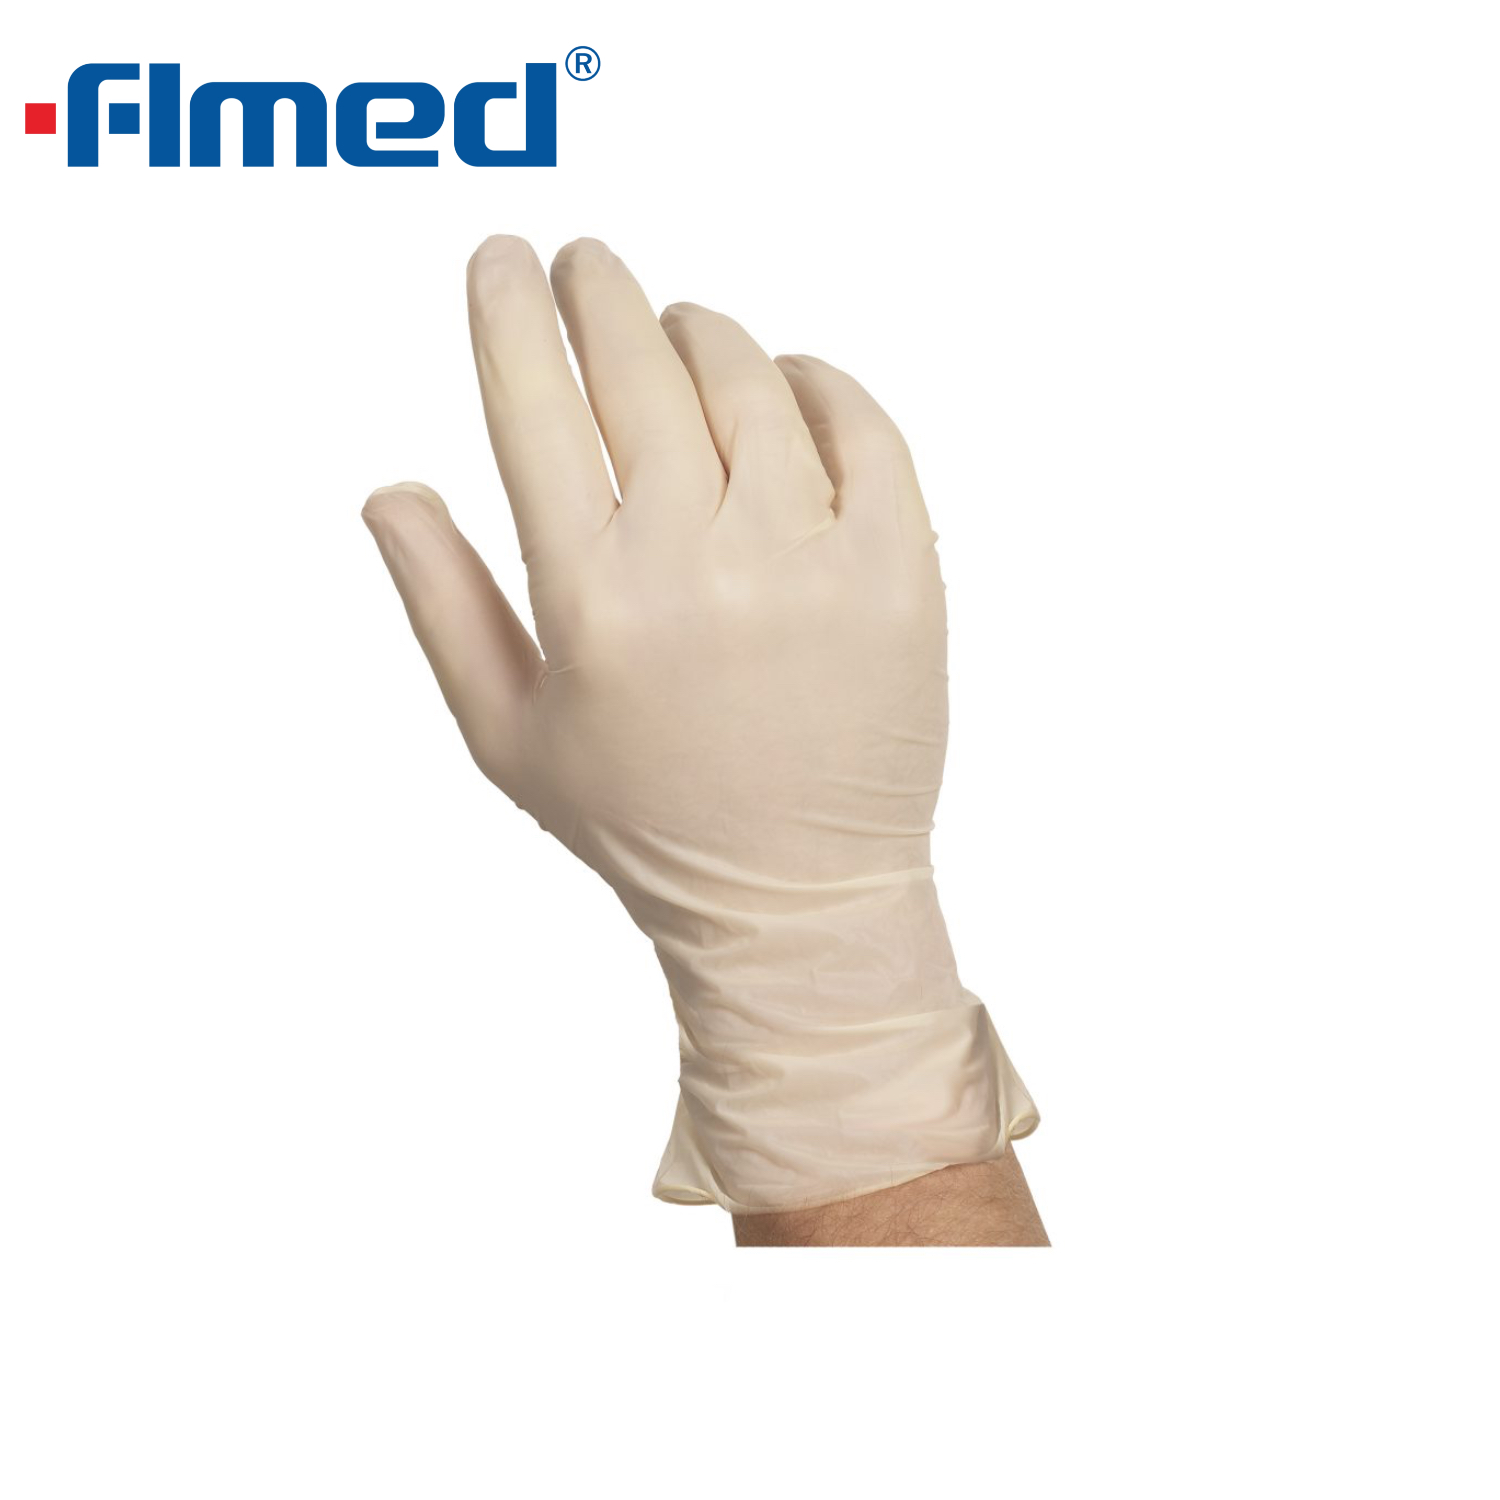 Tıbbi kullanım için tek kullanımlık lateks sınav eldivenleri (toz / toz içermez)